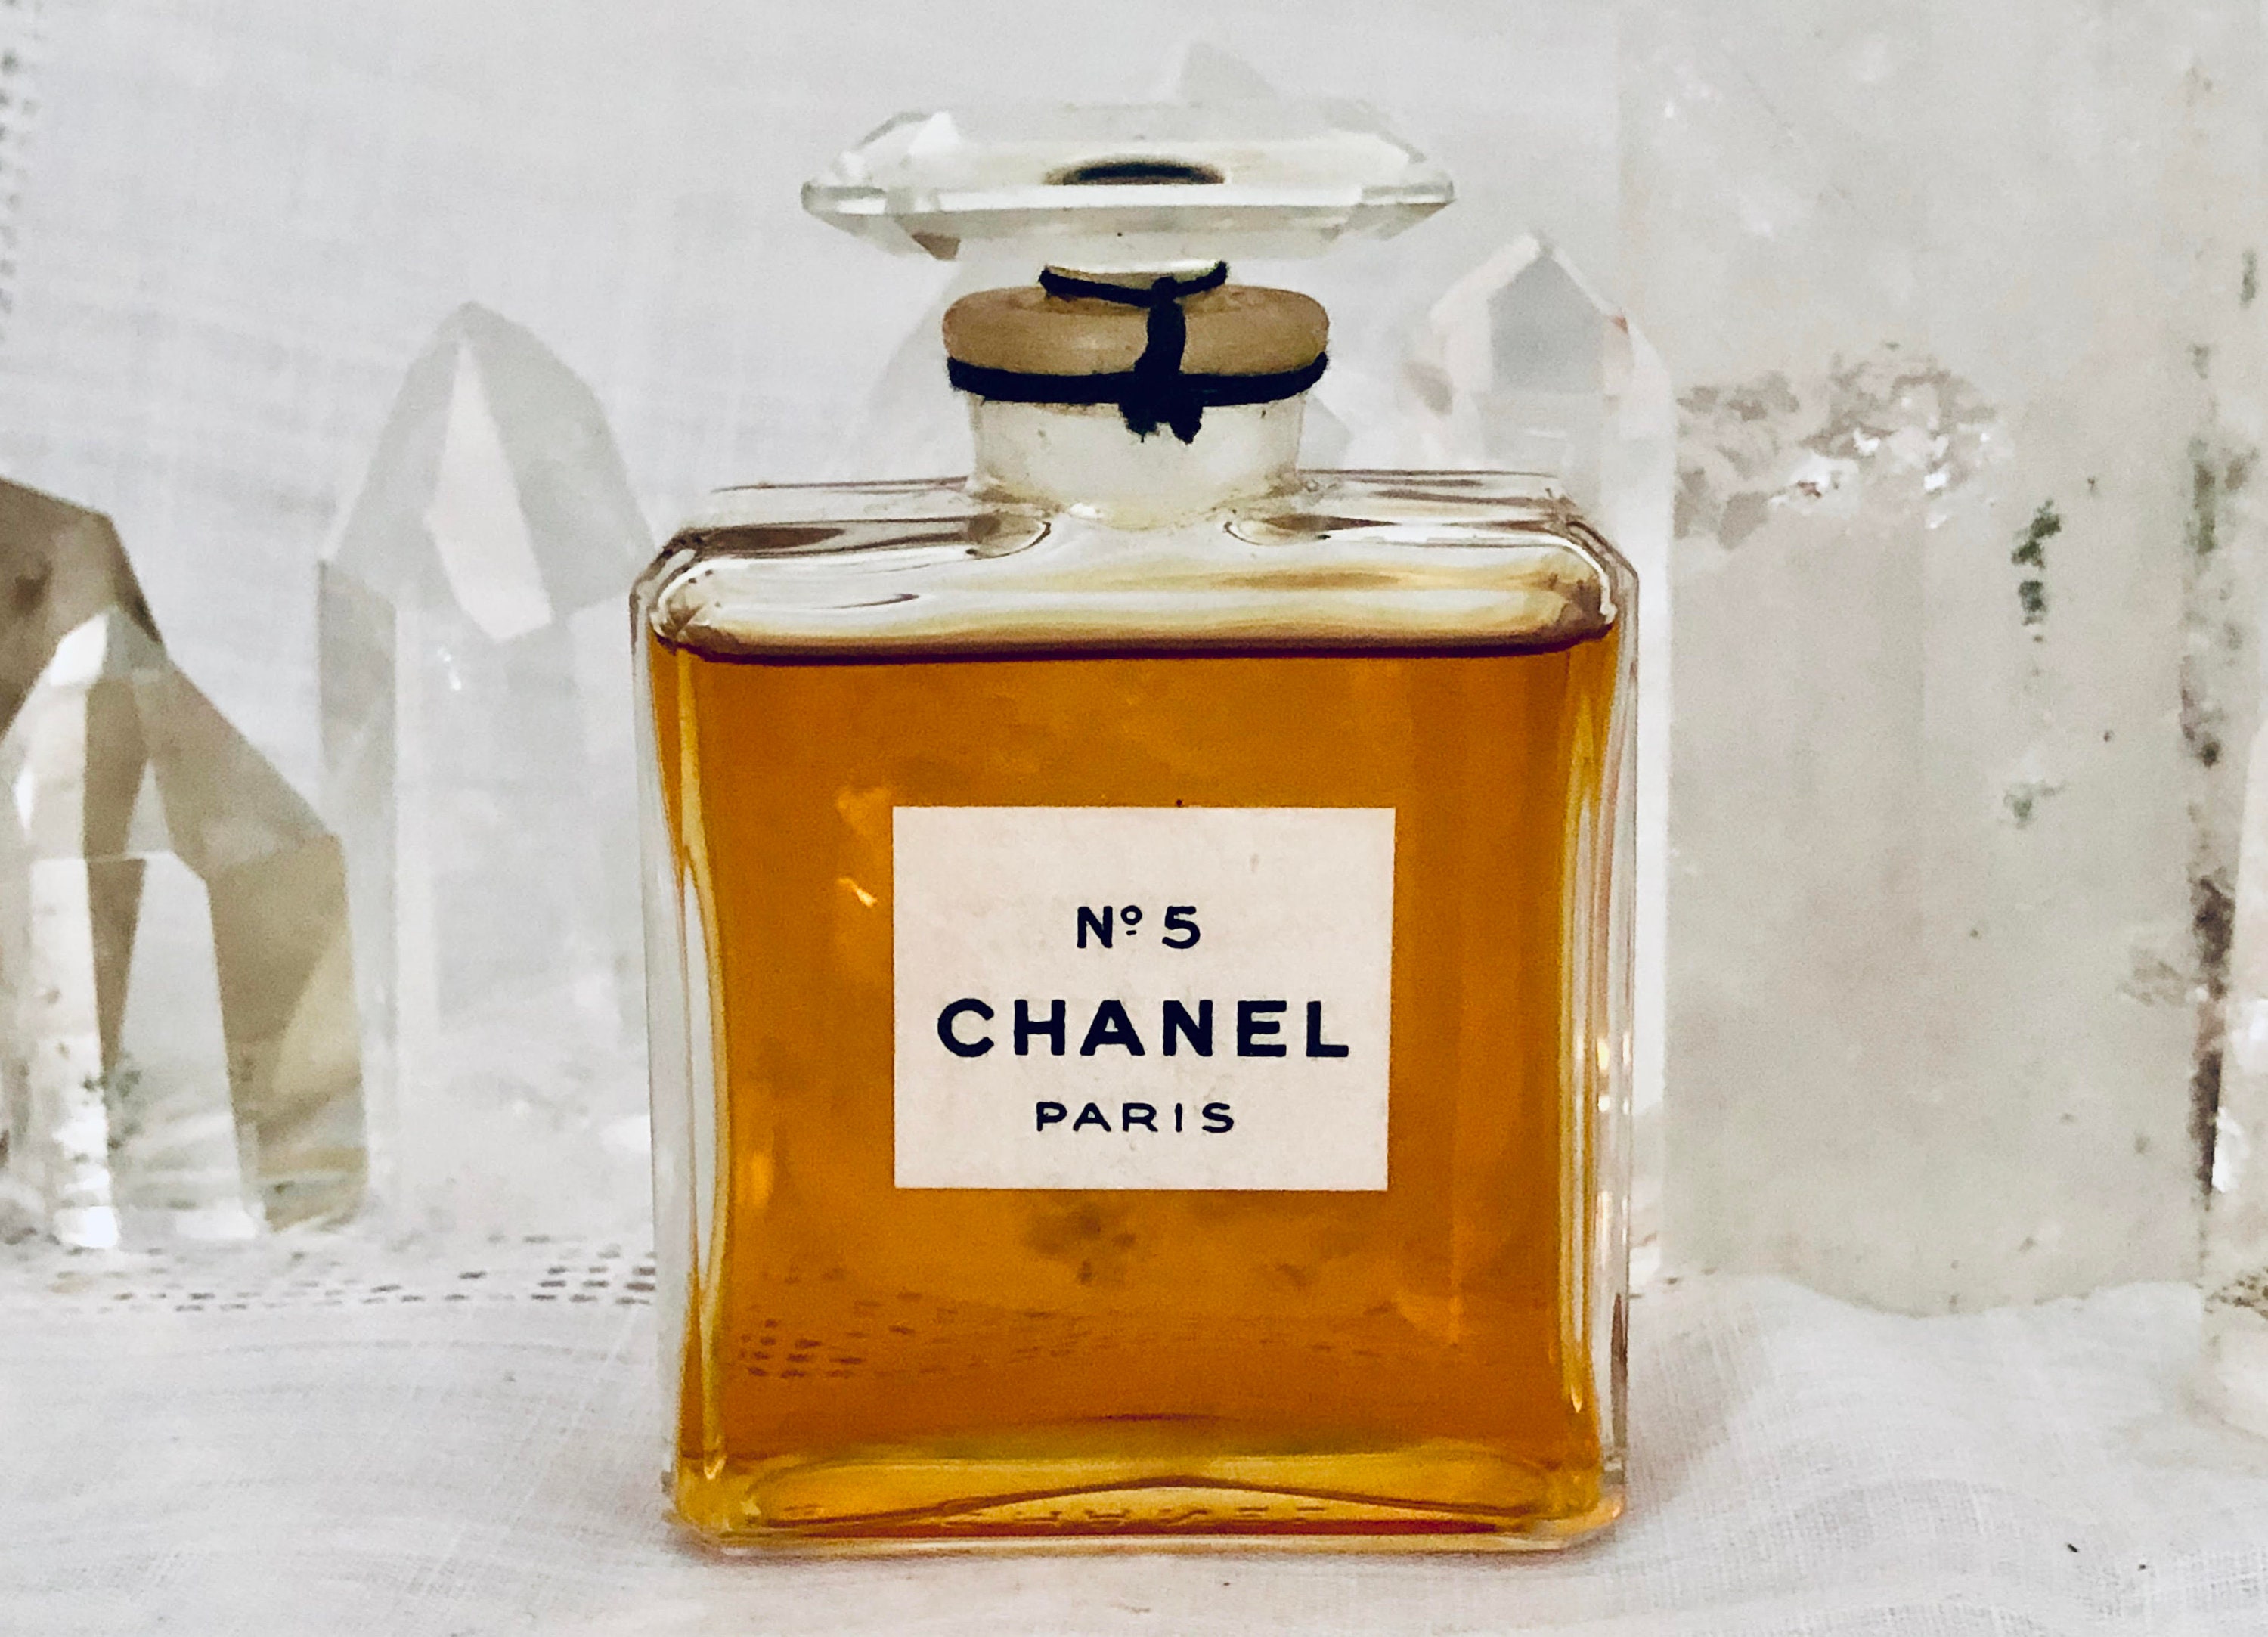 Chanel No. 5, 30 ml. or 1 oz. Flacon, Parfum Extrait, 1930, Paris, France ..